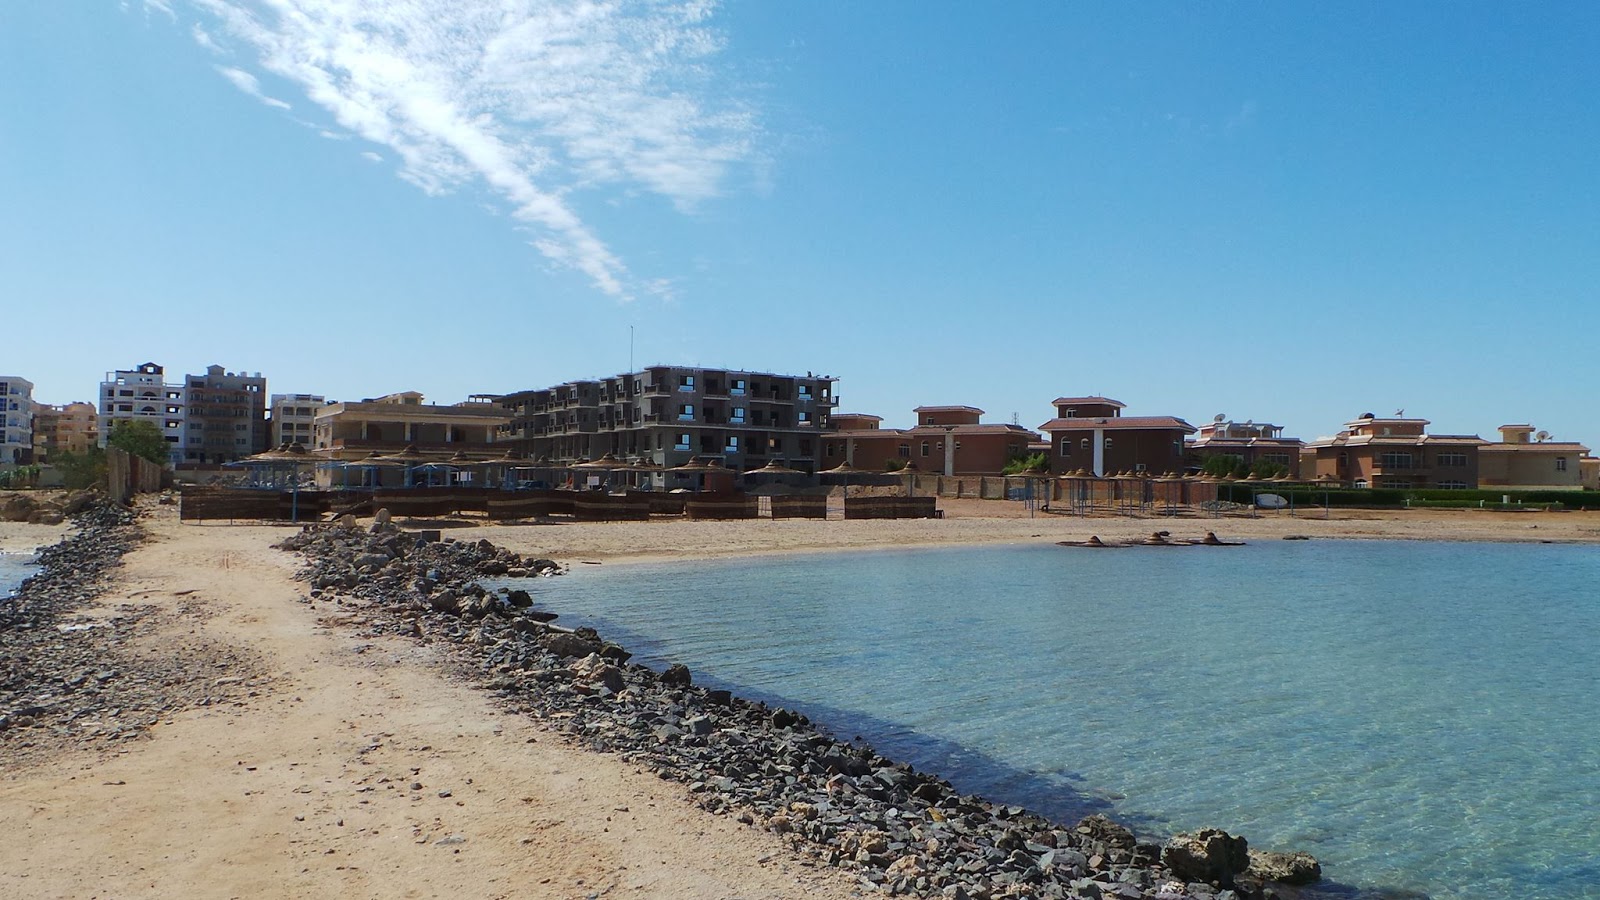 Foto de Turtles Beach Resort Hurghada - lugar popular entre los conocedores del relax